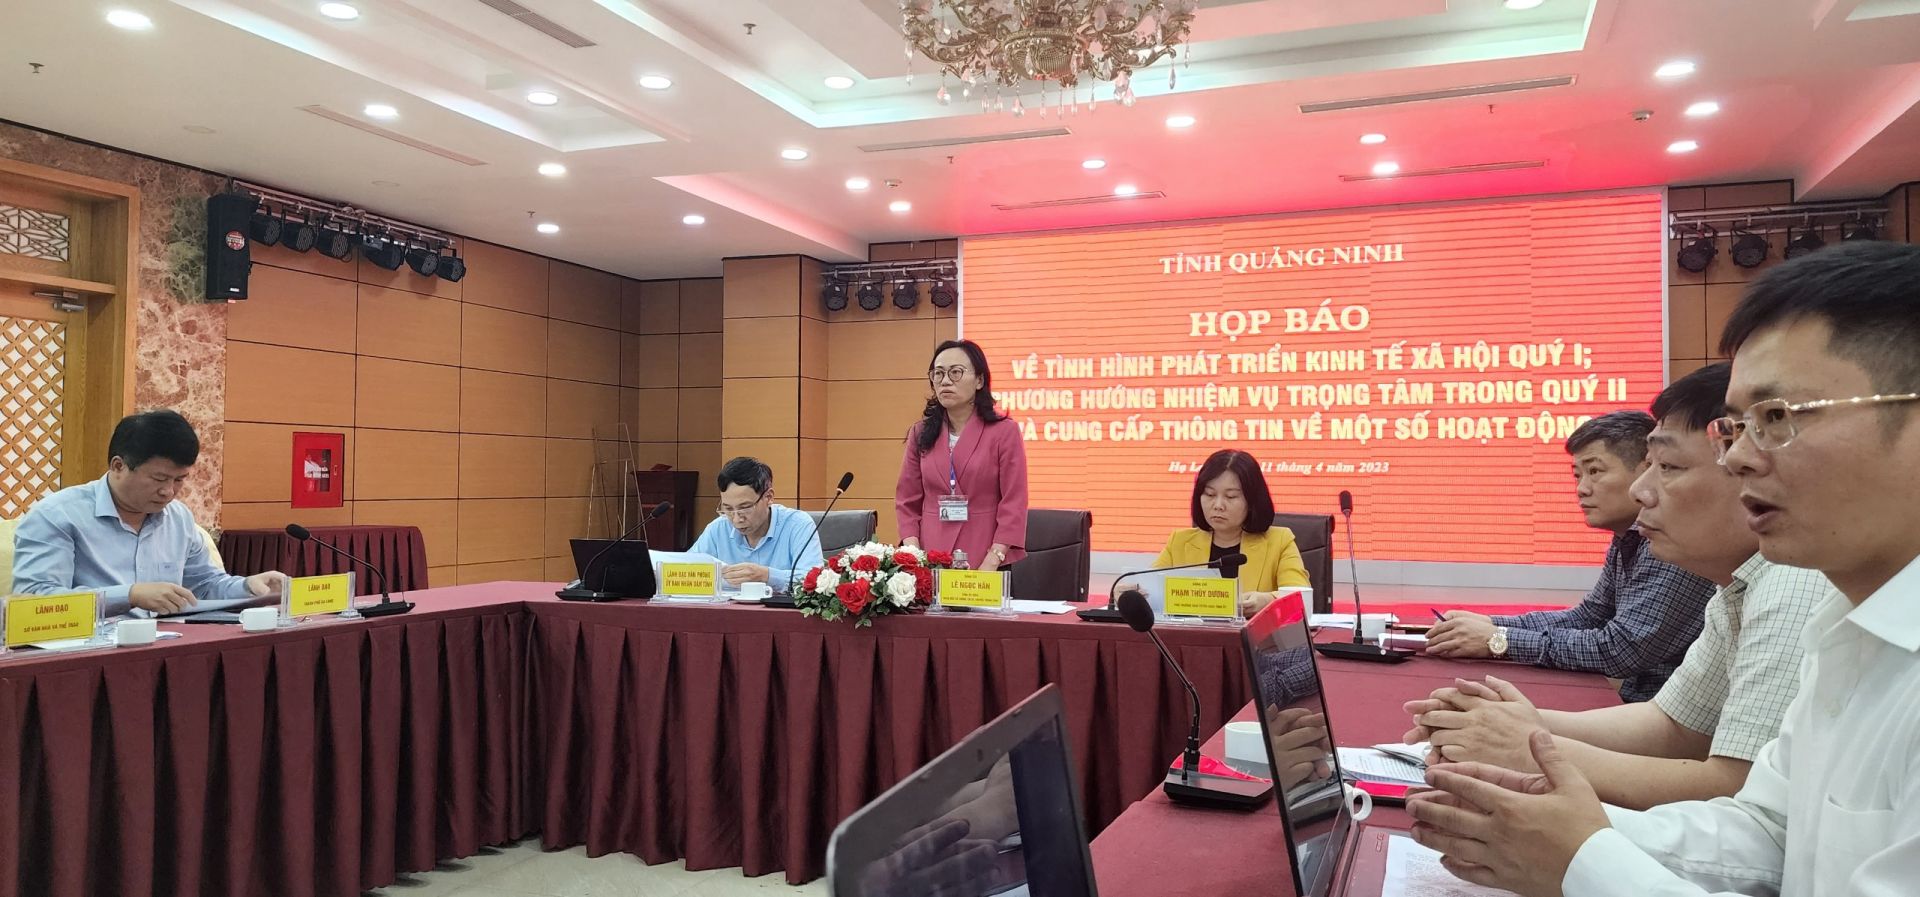 Đồng chí Lê Ngọc Hân, Tỉnh ủy viên, Giám đốc Sở TT&TT tỉnh, chủ trì cuộc họp báo thông tin một số nội dung quan trọng.